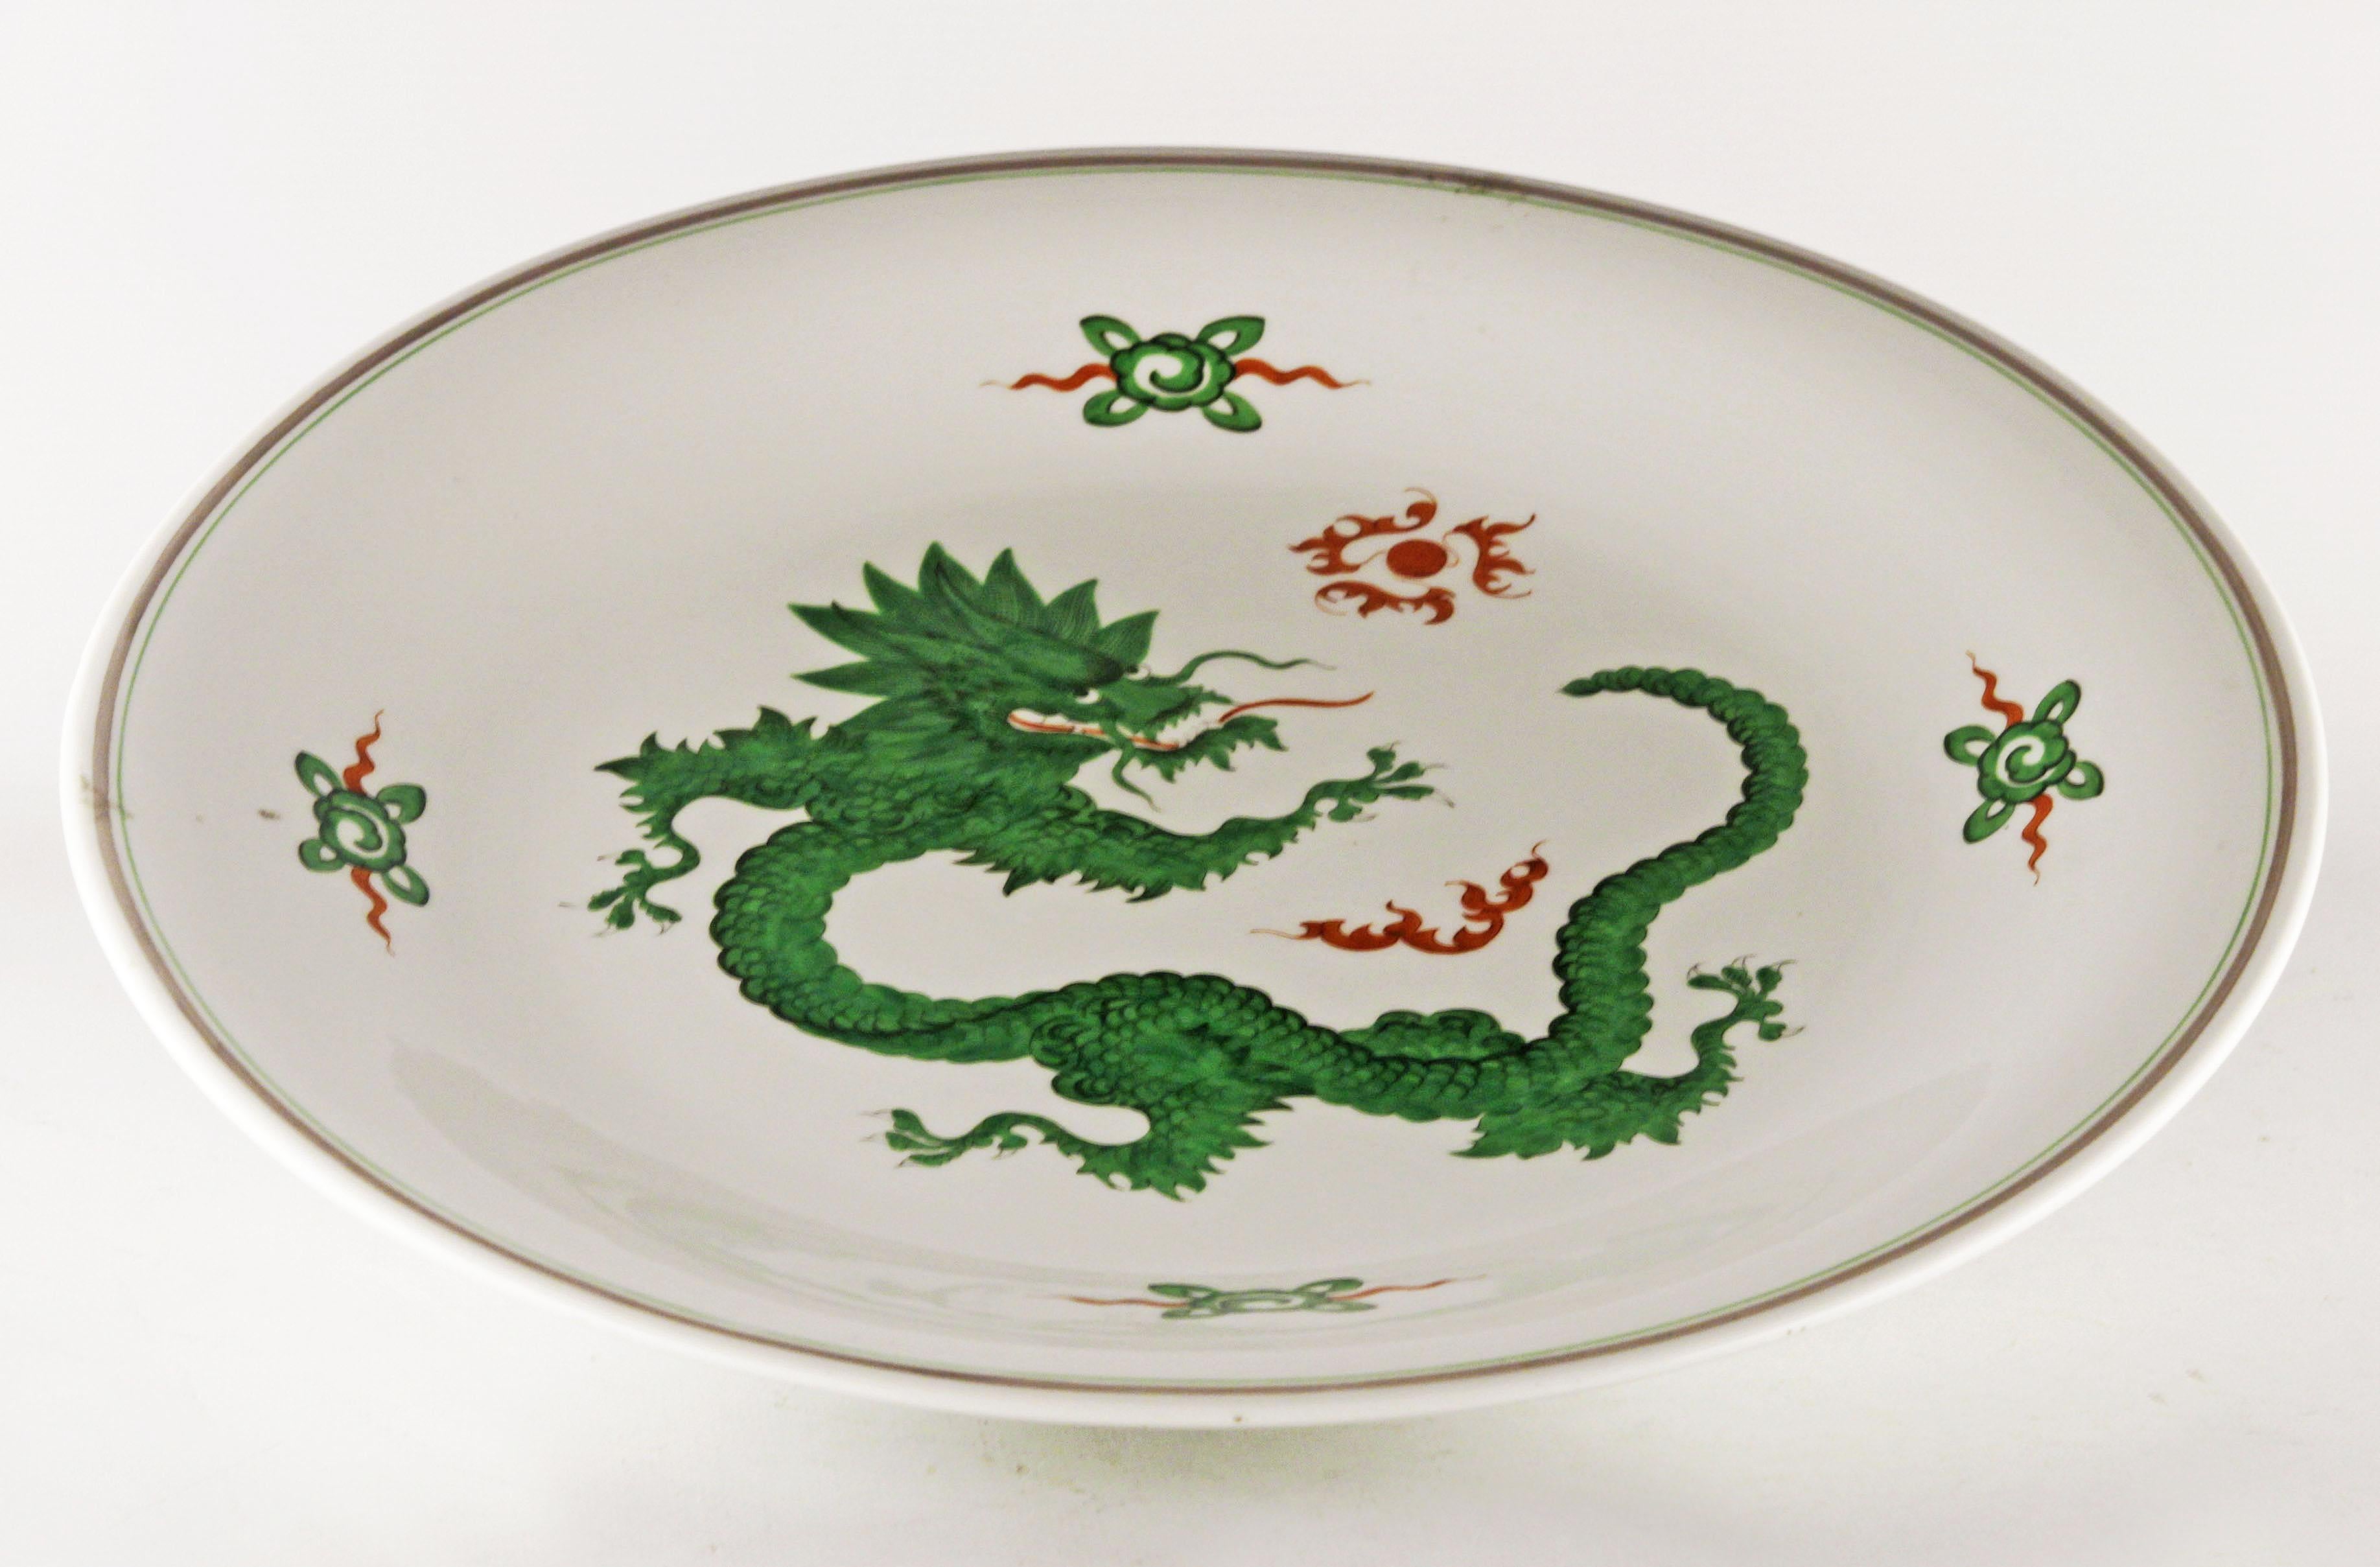 Assiette à dîner allemande Chinoiserie avec dragon Ming peint en vert par Meissen Porcelaine

Par : Porcelaine de Meissen
Matériau : porcelaine, peinture, émail, céramique
Technique : émaillé, glacé, peint à la main, moulé, peint, pressé
Dimensions